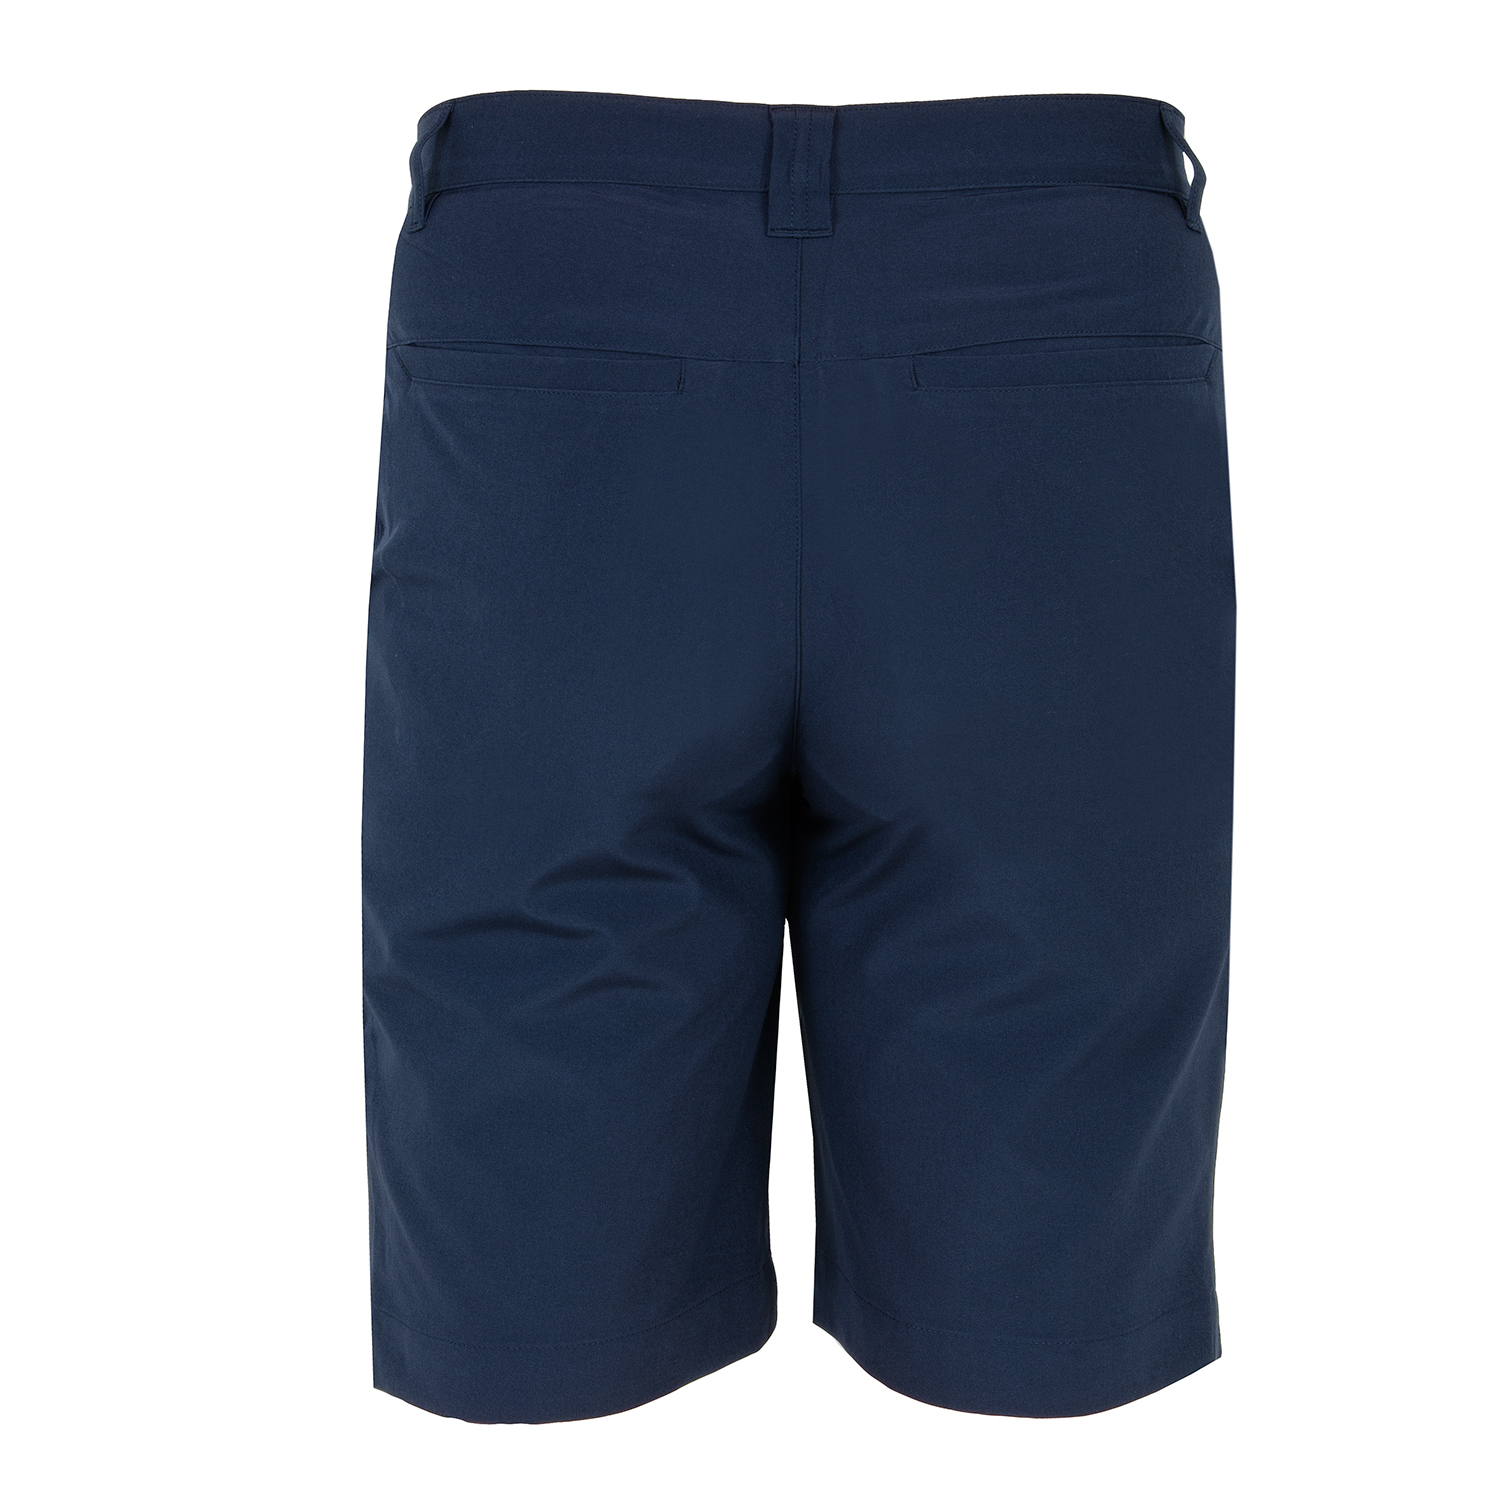 Lacoste Bermuda Golf Shorts Navy Blue | Scottsdale Golf